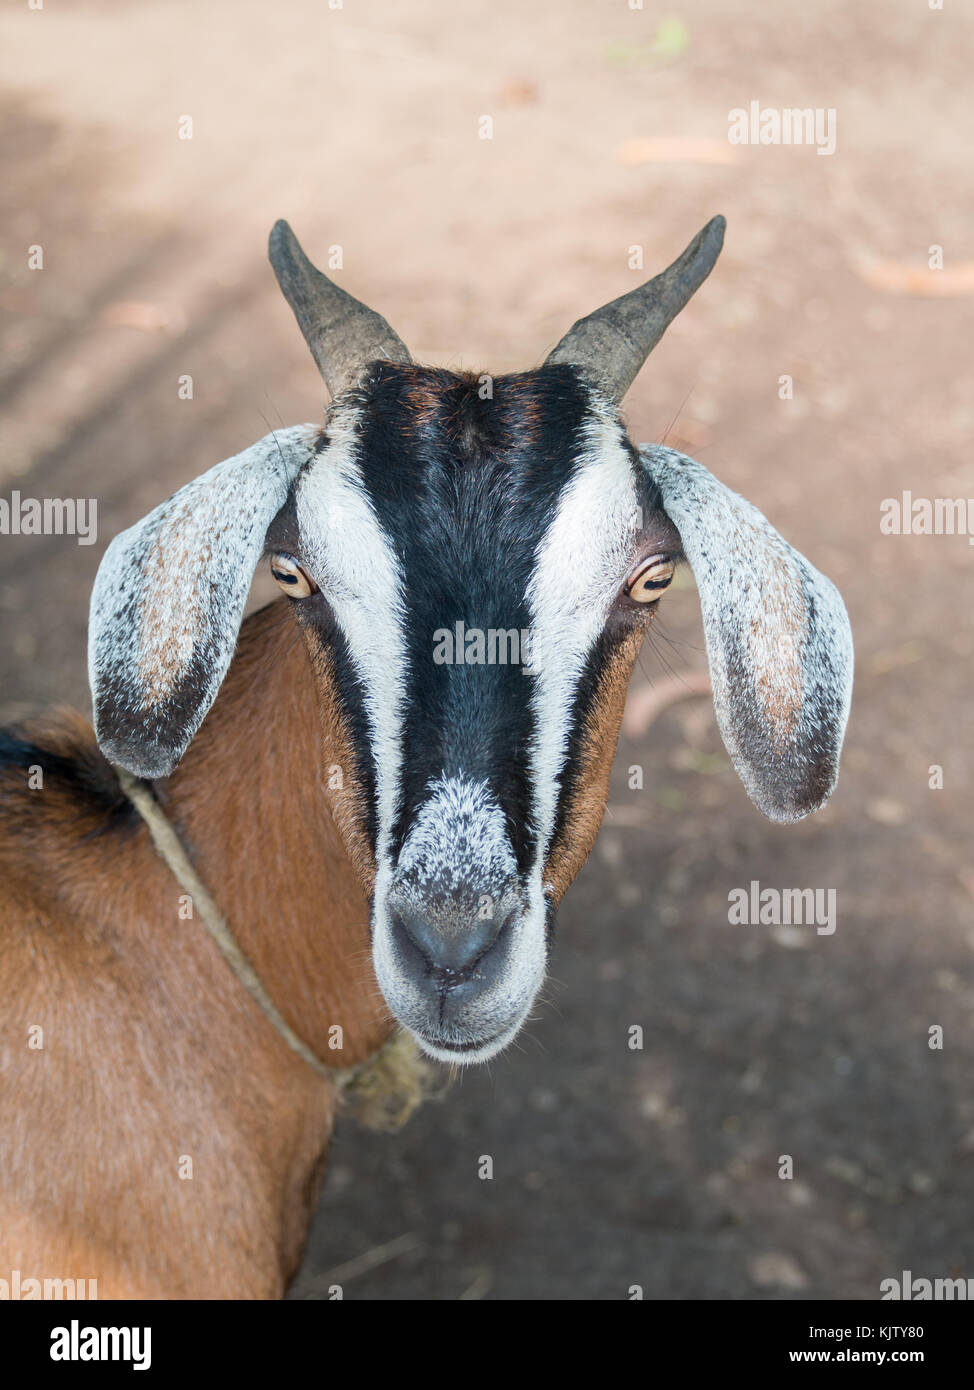 Goat close-up facing camera Stock Photo